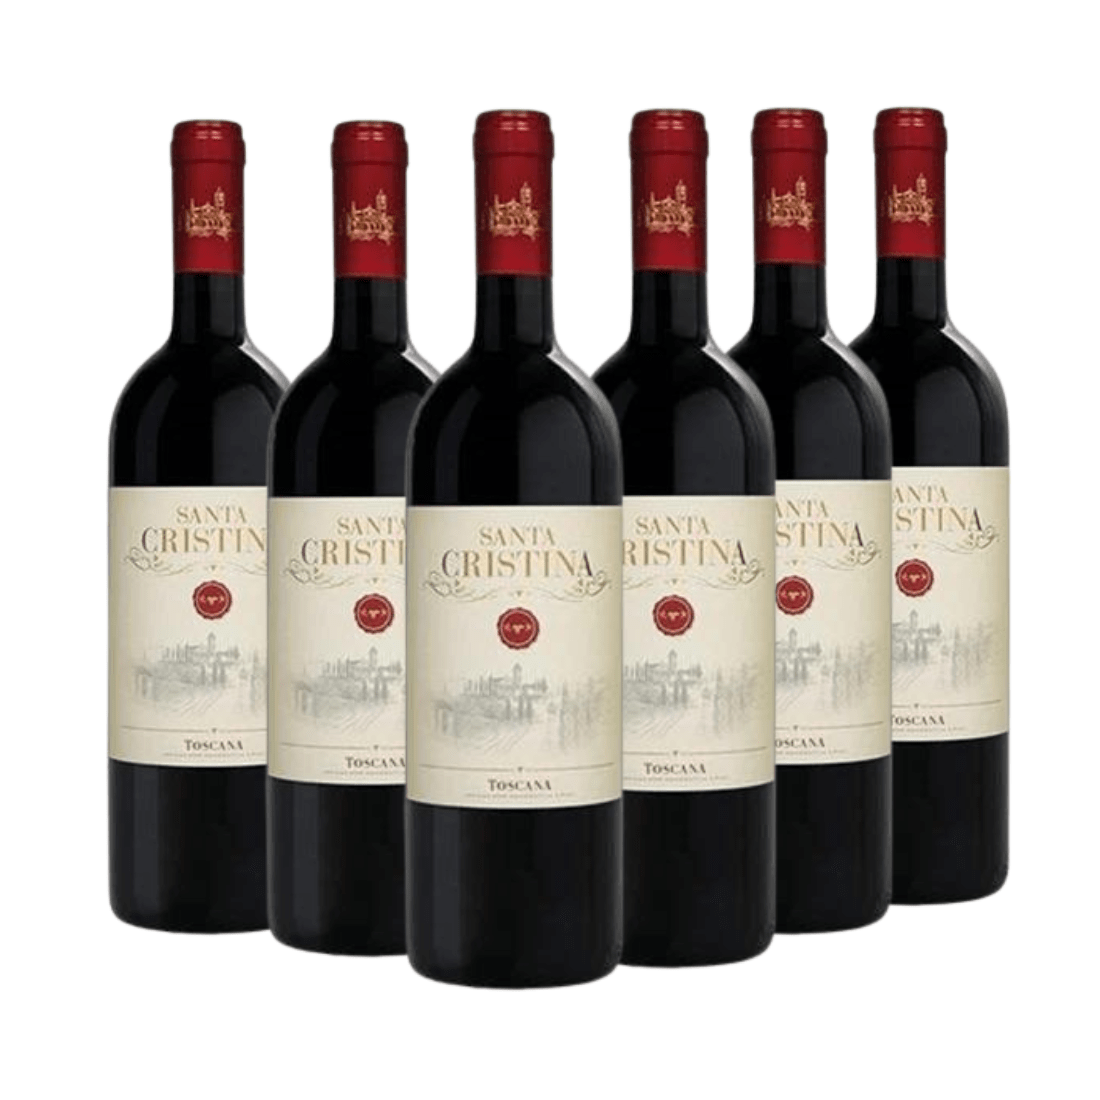 Antinori Santa Cristina 2022 Igt Toscana Rosso 6 bottiglie - Antinori